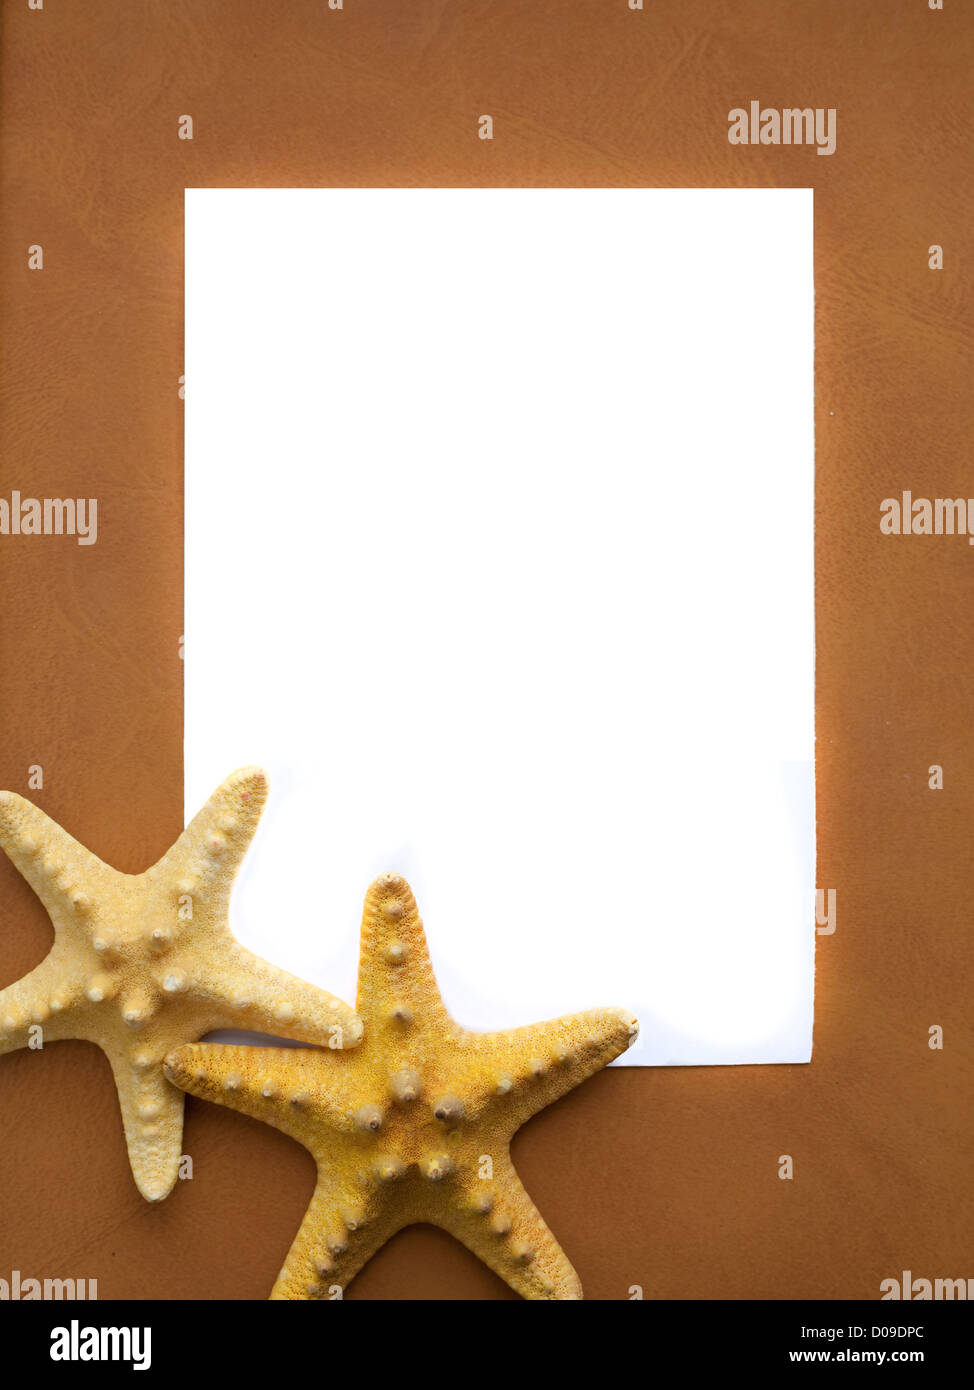 Bastidor de mar con estrellas marinas y espacio vacío Foto de stock